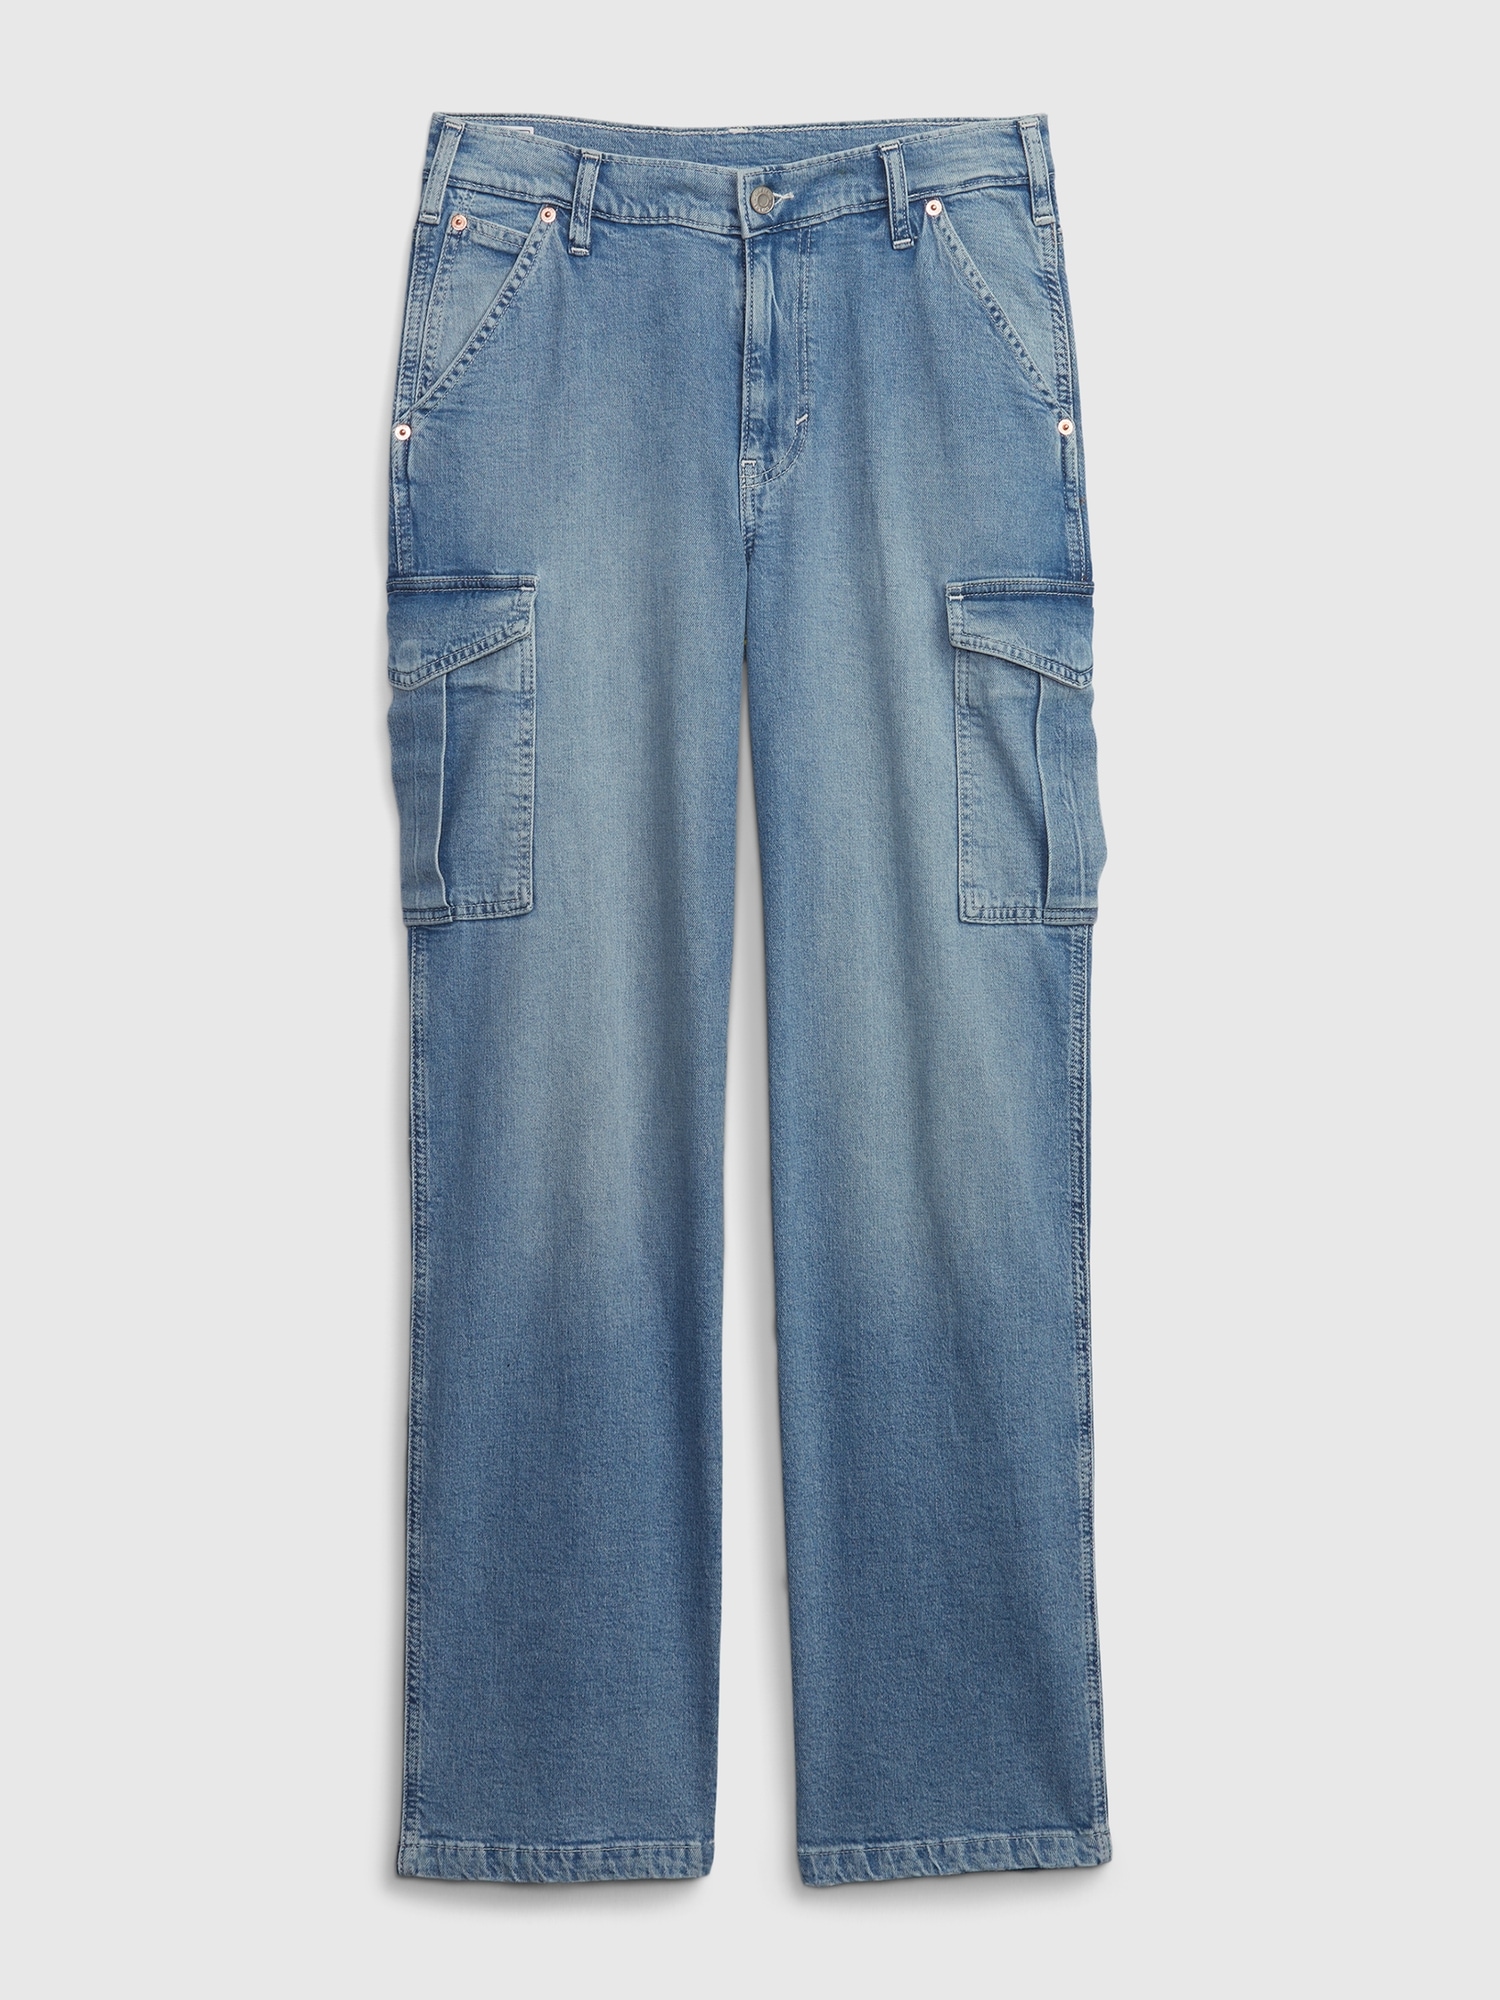  LEWGEL Women's Jeans Flap Pocket Side Cargo Jeans